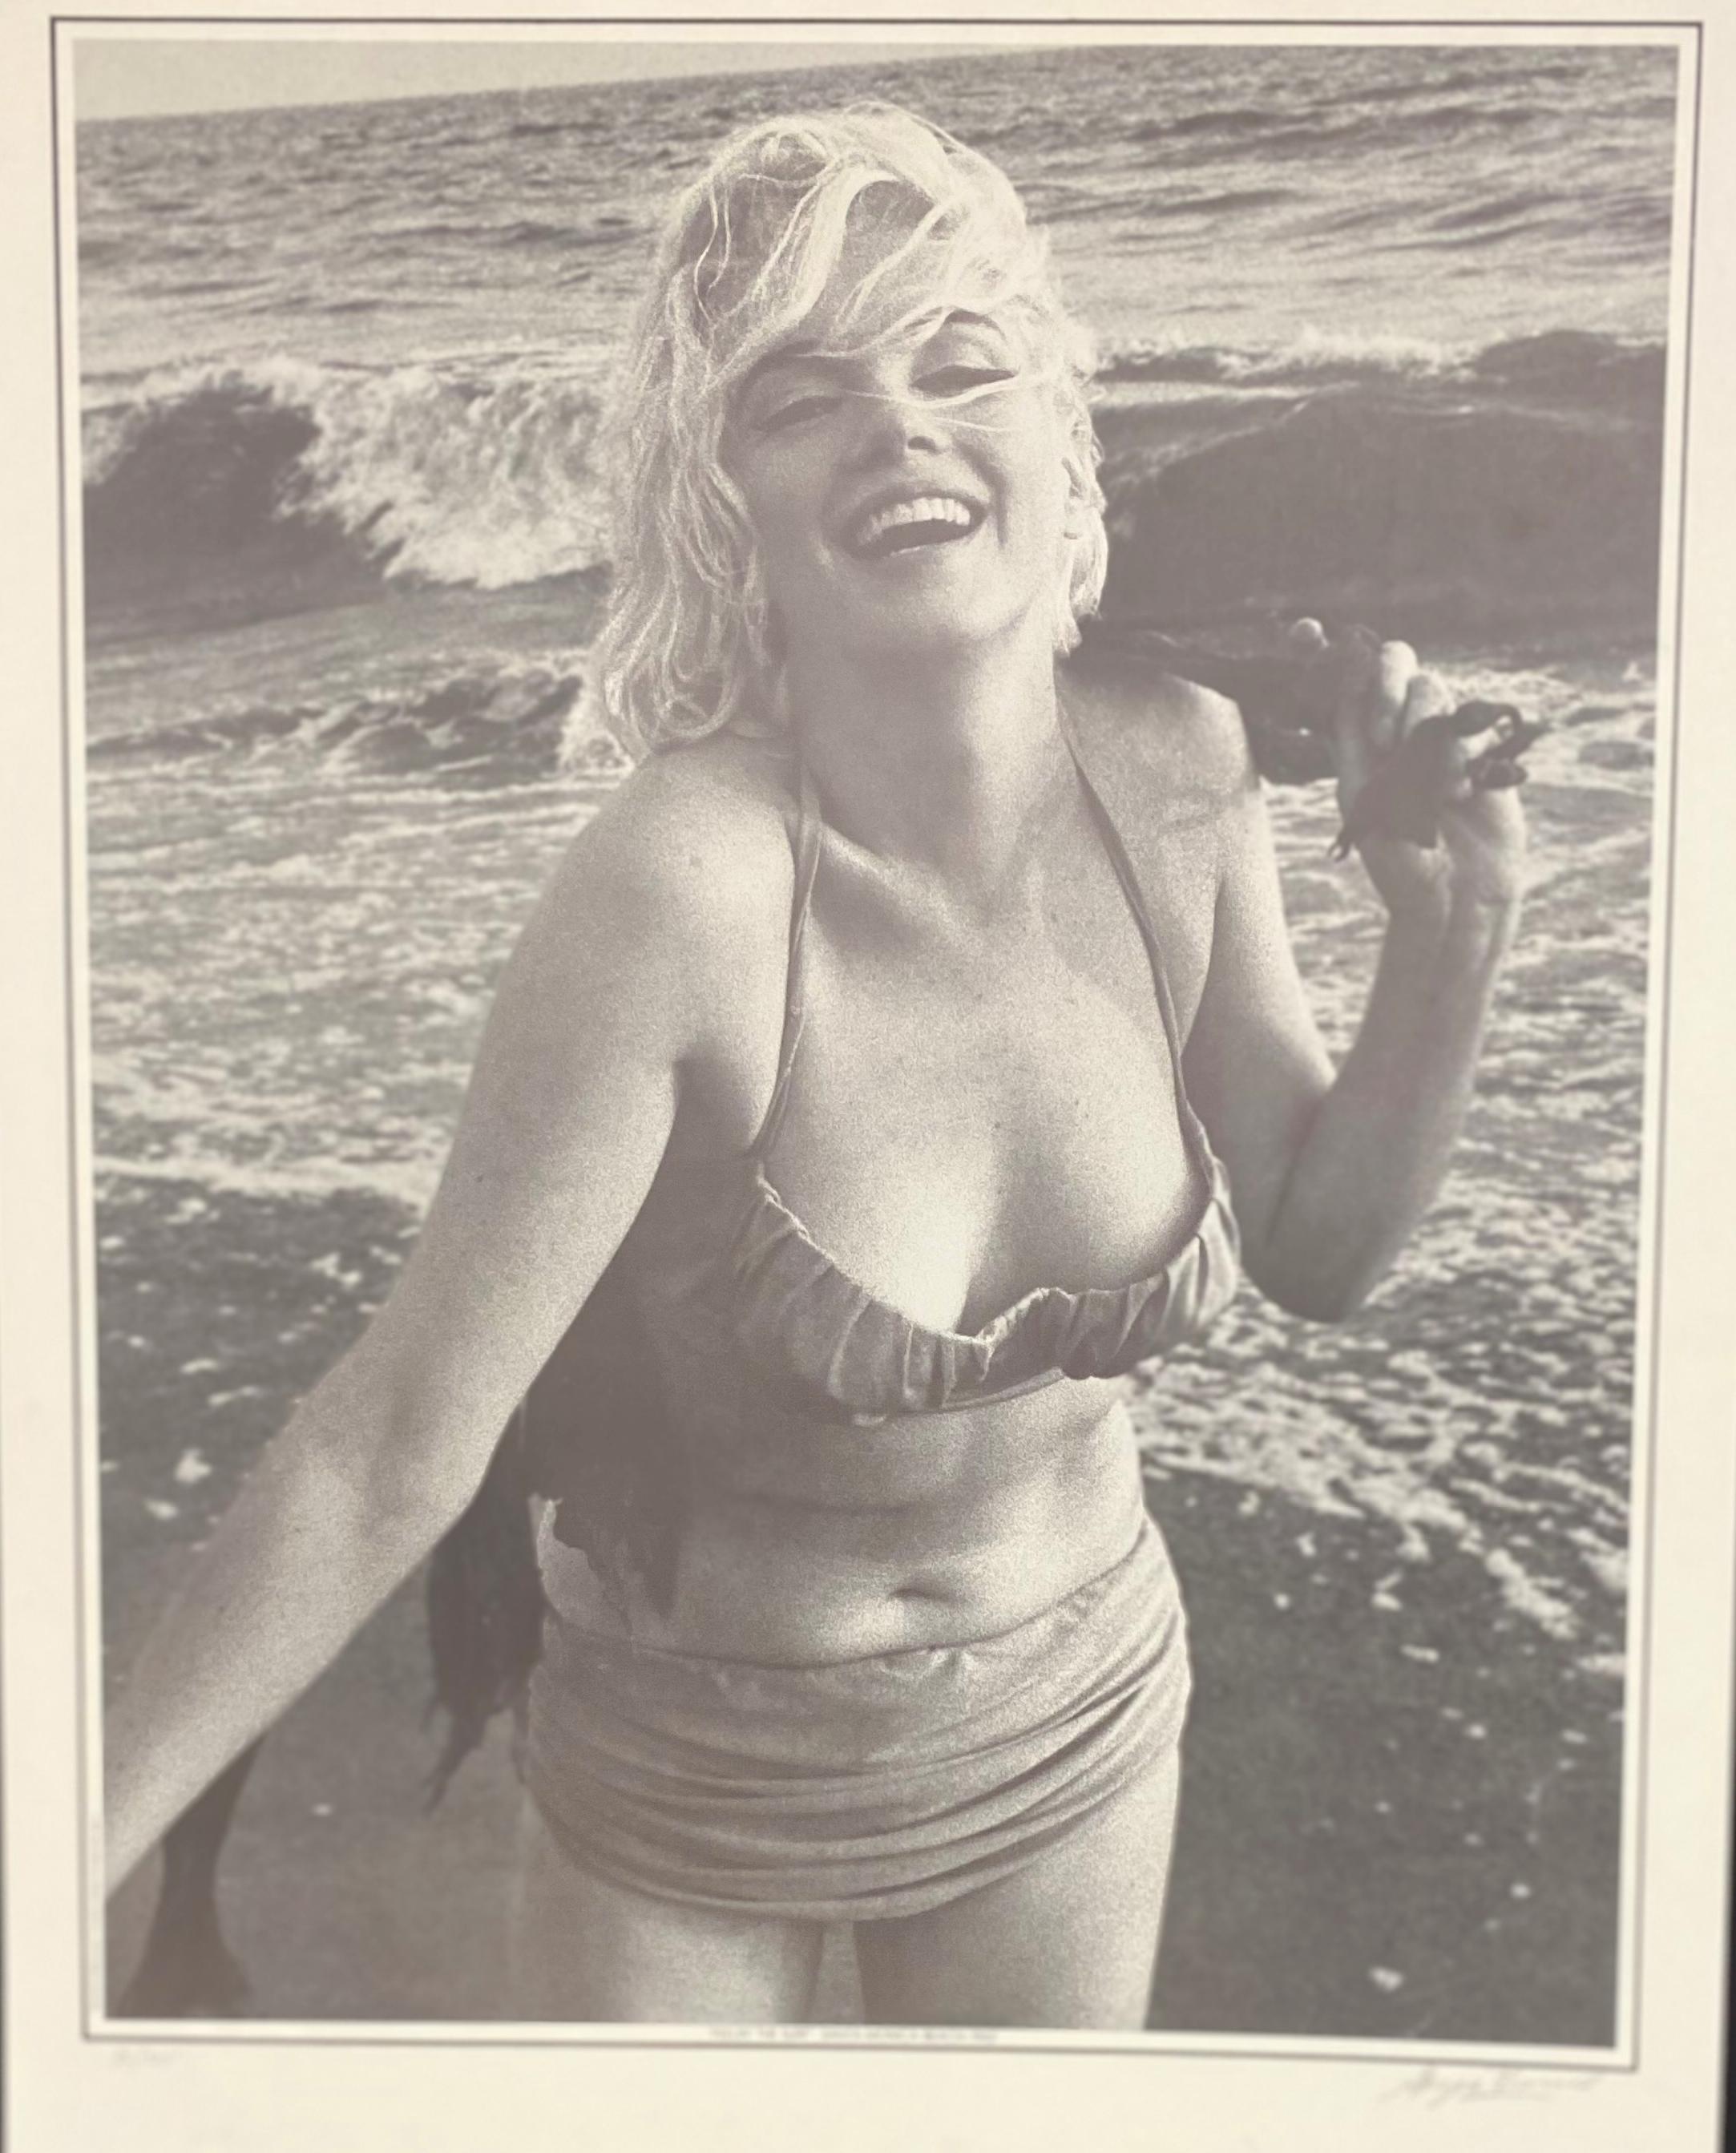 Aufgenommen am Strand von Santa Monica, Kalifornien, 2 1/2 Wochen vor ihrem Tod,  Dieses Foto stammt aus dem letzten Fotoshooting von Marilyn Monroe durch den Fotografen George Barris. Fotolithografie nach einem Originalnegativ. Herausgegeben von